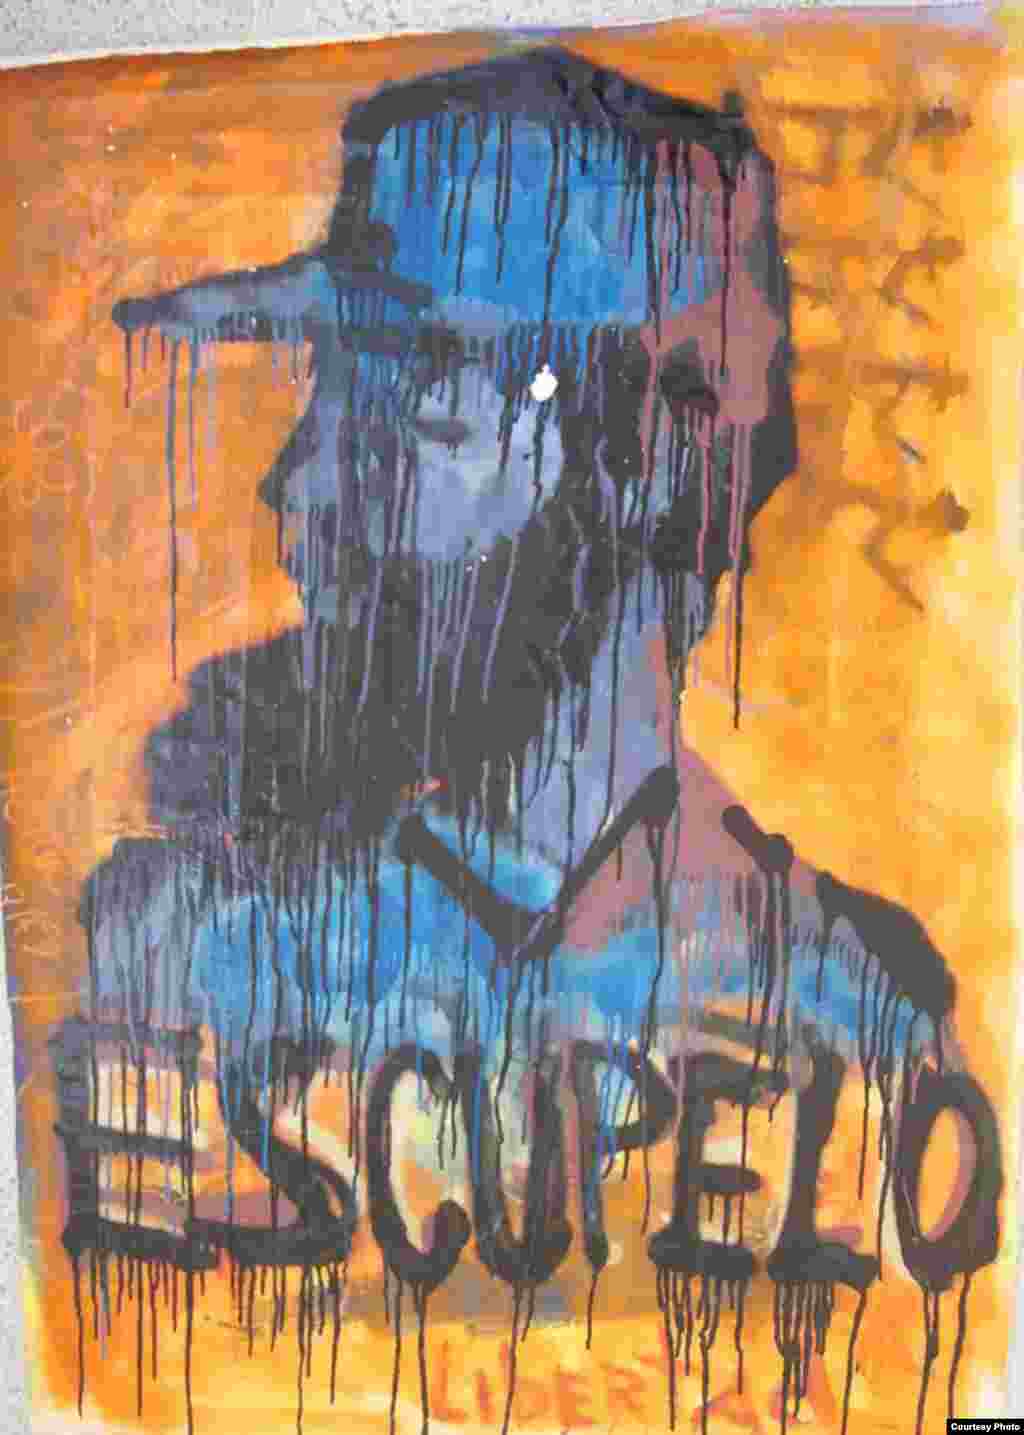 Grafitis contestatario de El Sexto, con una imagen que semeja al dictador Fidel Castro.